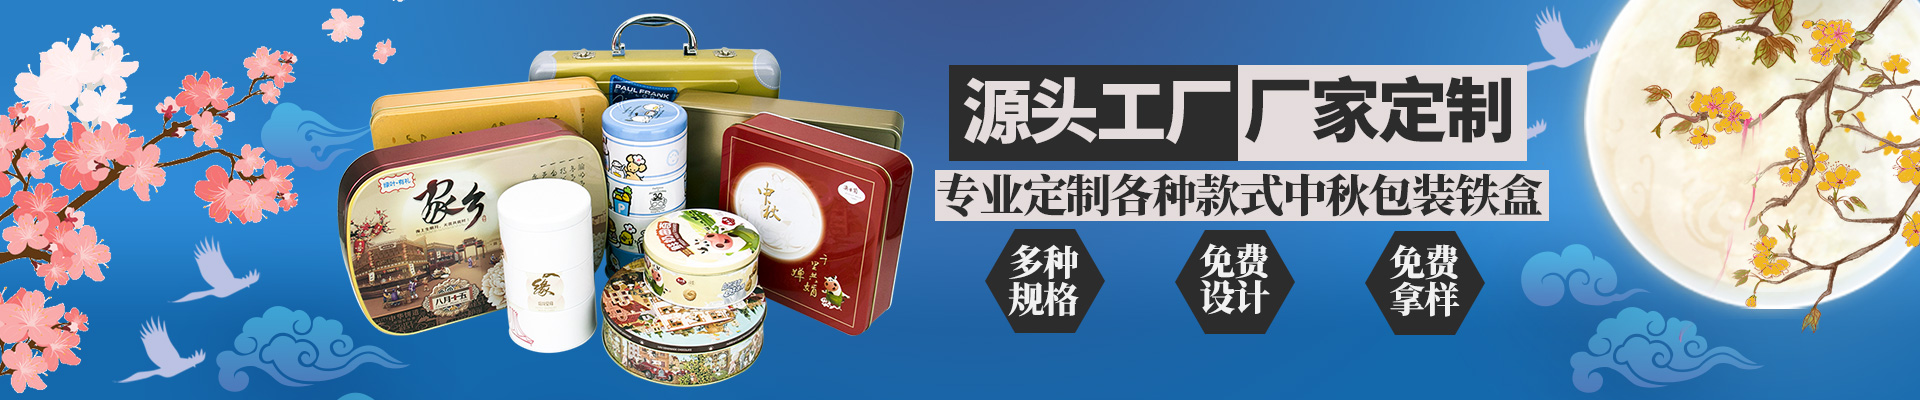 月饼铁盒月饼半岛·综合「中国」官方网站小横图